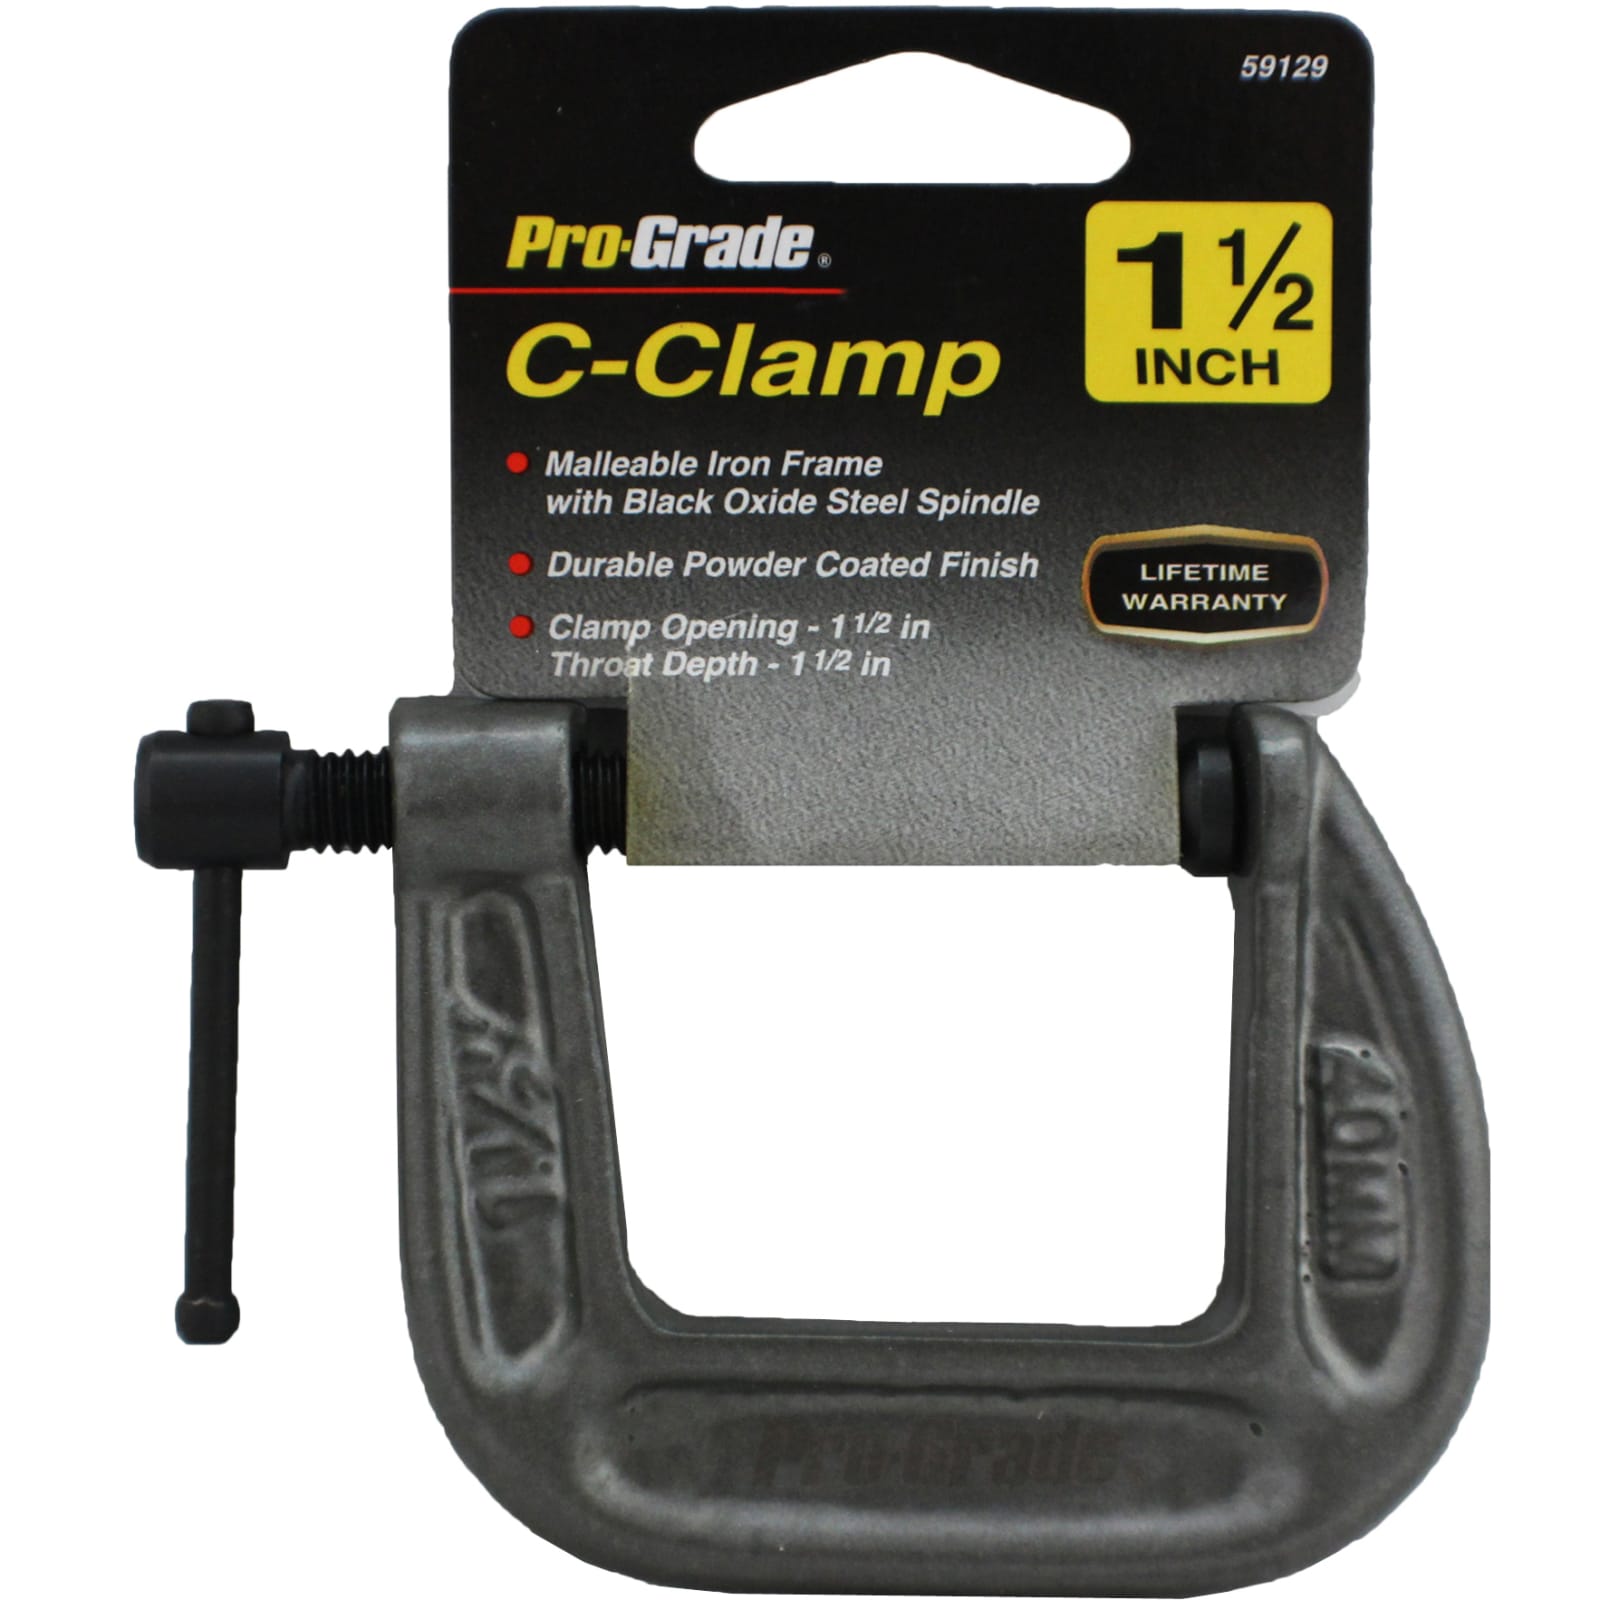 Plastic C-Clamp